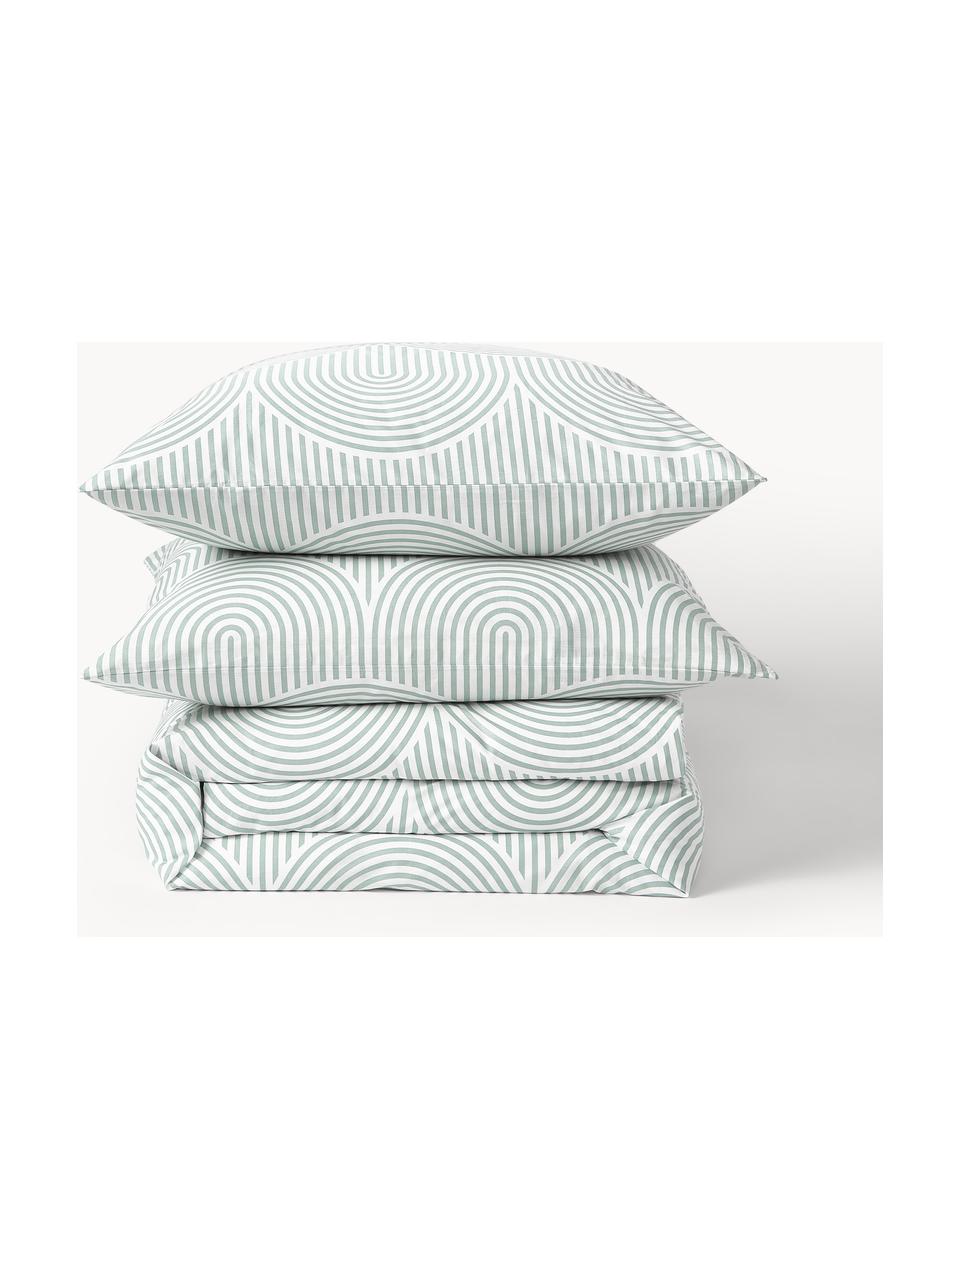 Baumwoll-Bettdeckenbezug Arcs, Webart: Renforcé Fadendichte 144 , Salbeigrün, Weiß, B 200 x L 200 cm